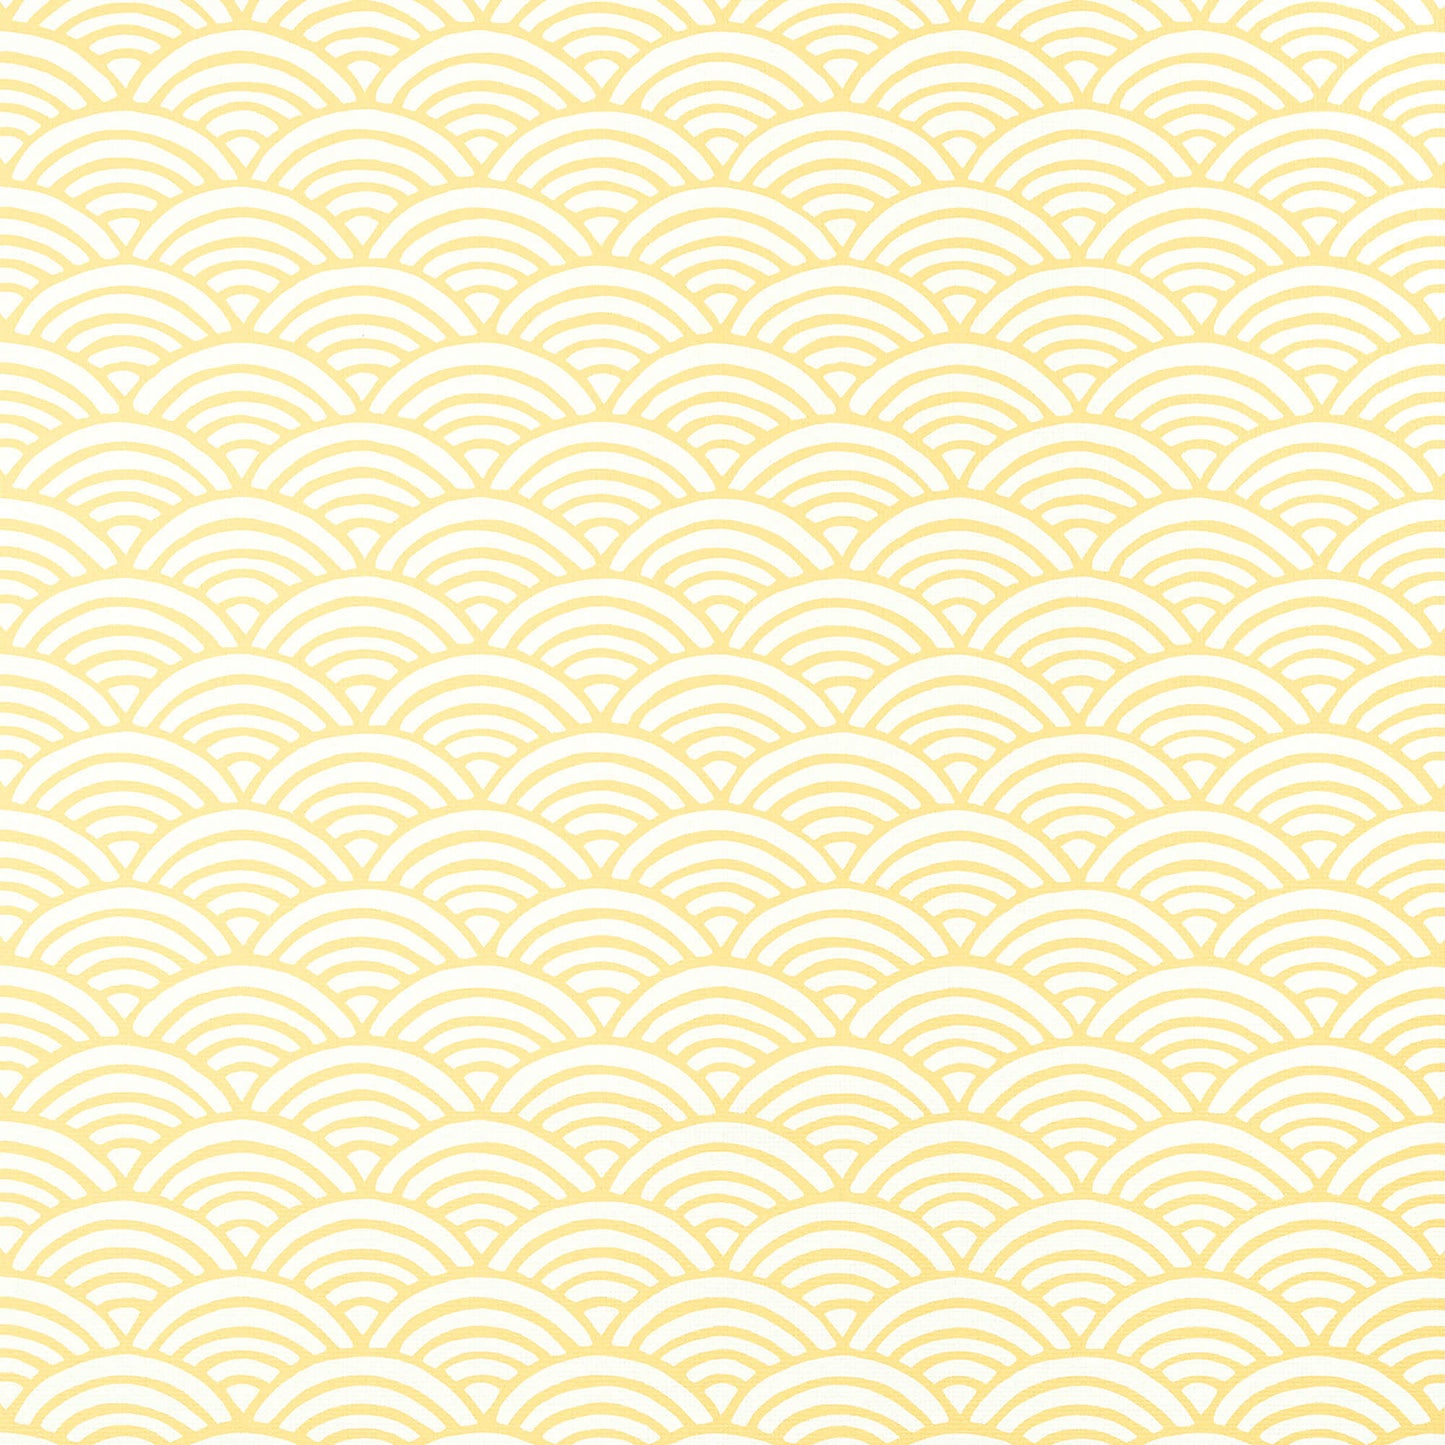 Thibaut Pavilion Maris Wallpaper - Yellow